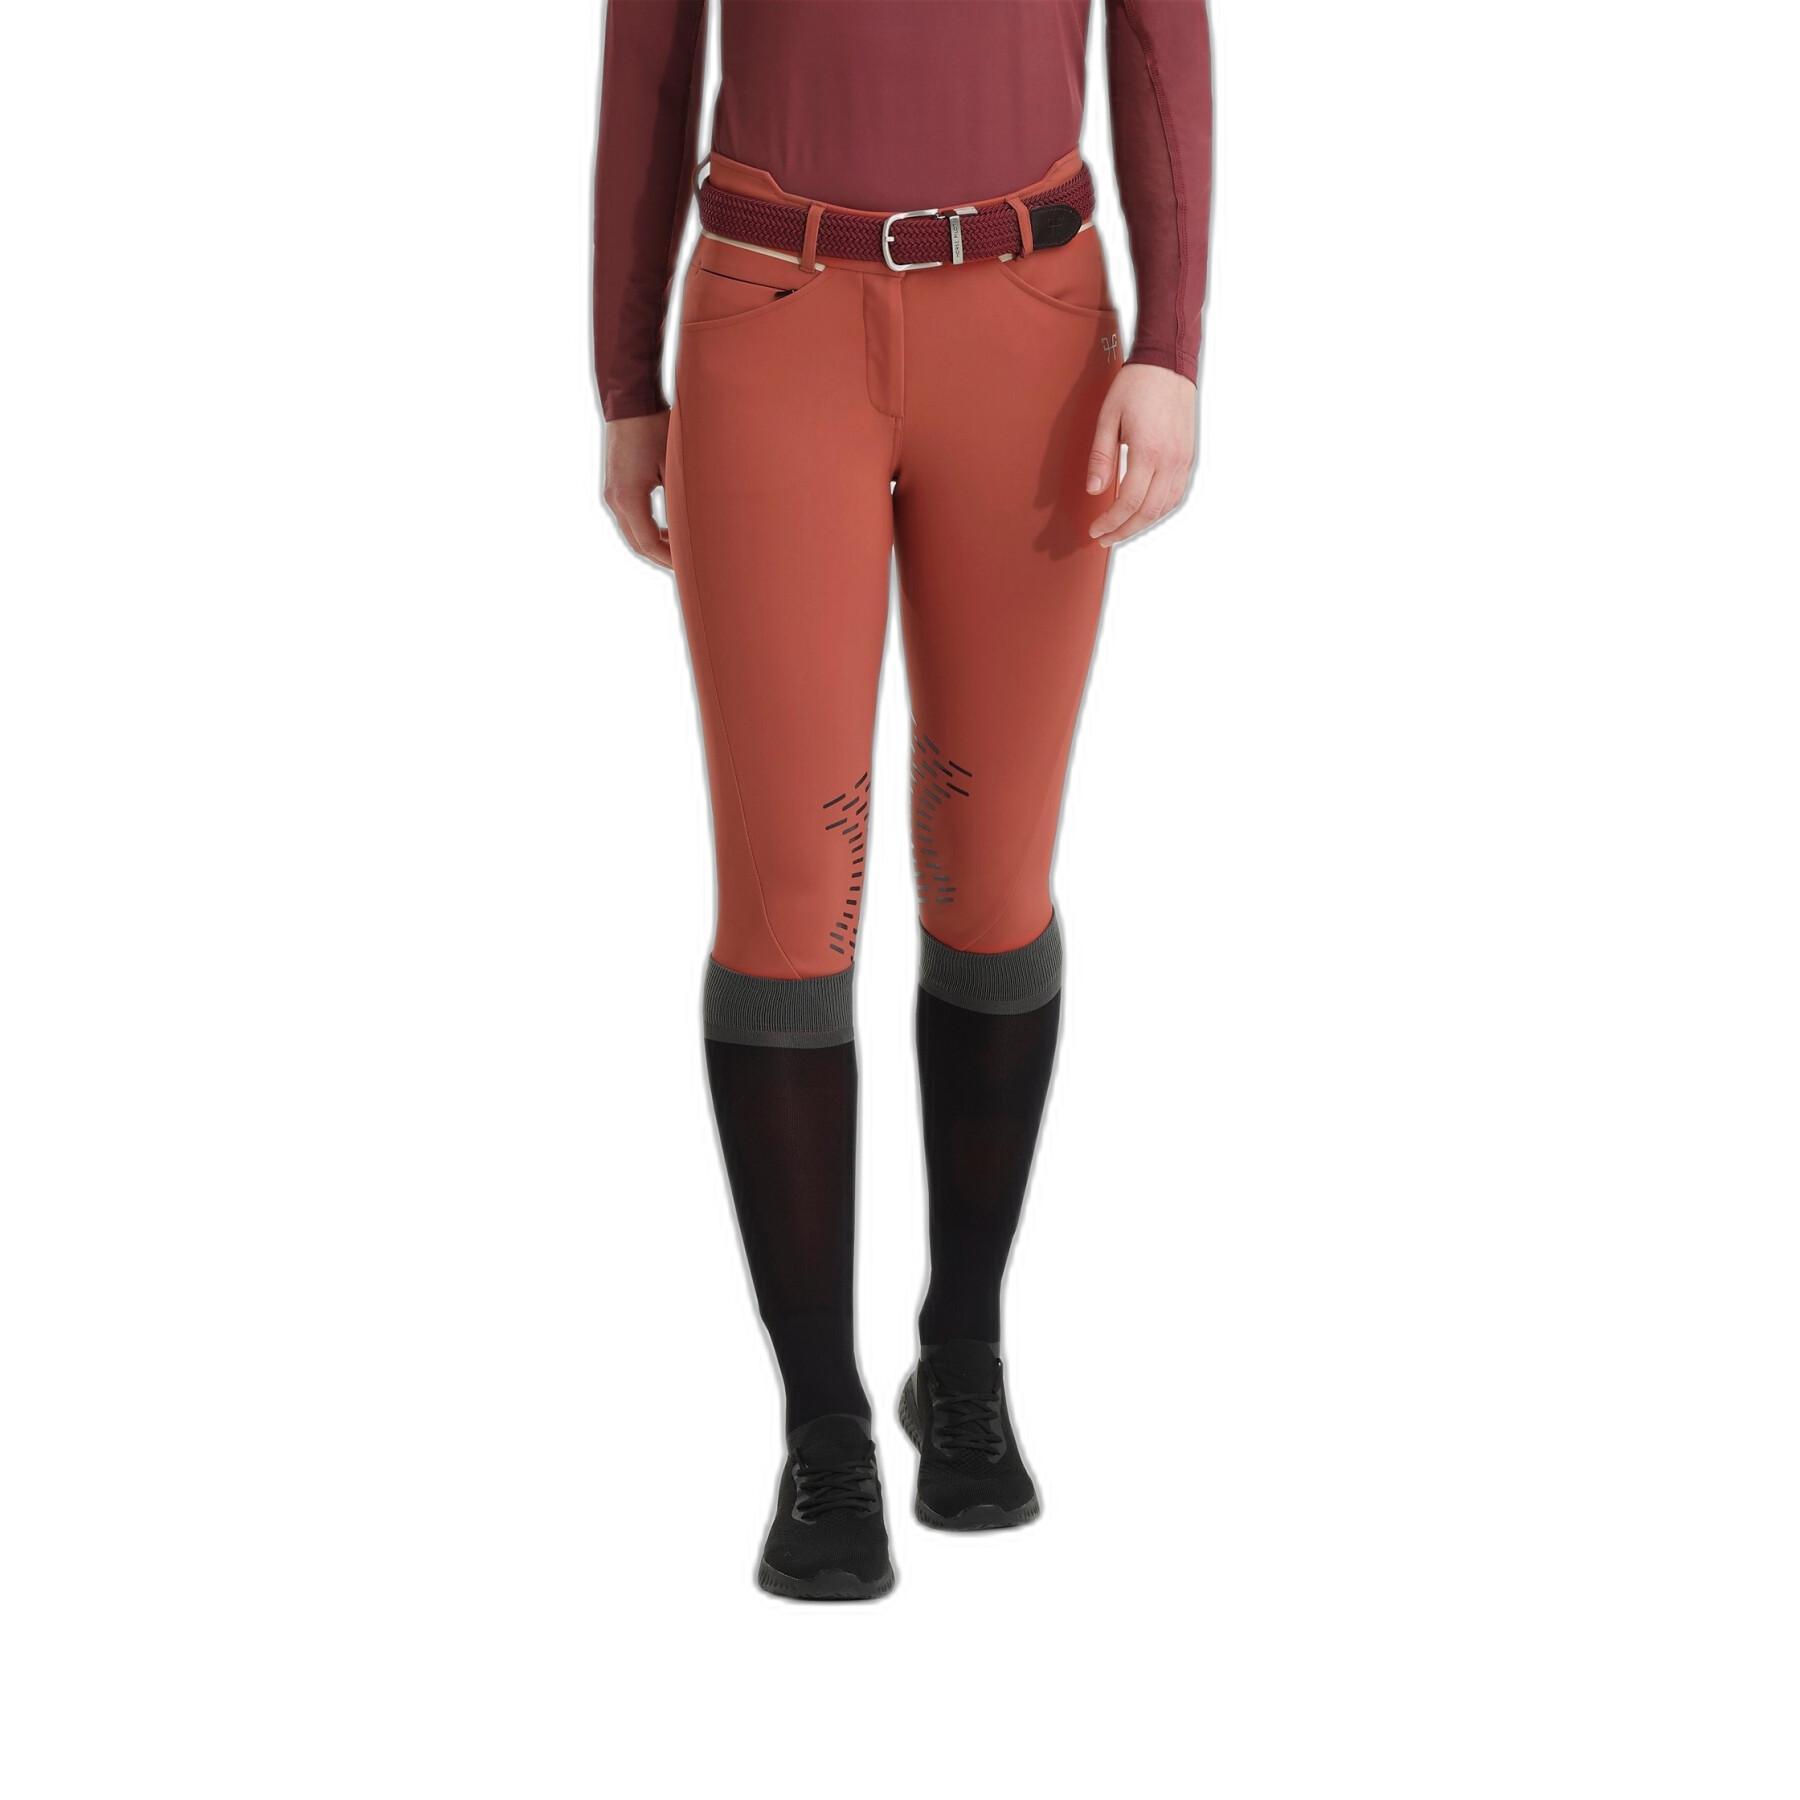 Pantalon équitation femme Horse Pilot X-Design - Pantalons d'équitation -  La cavalière - Cavaliers